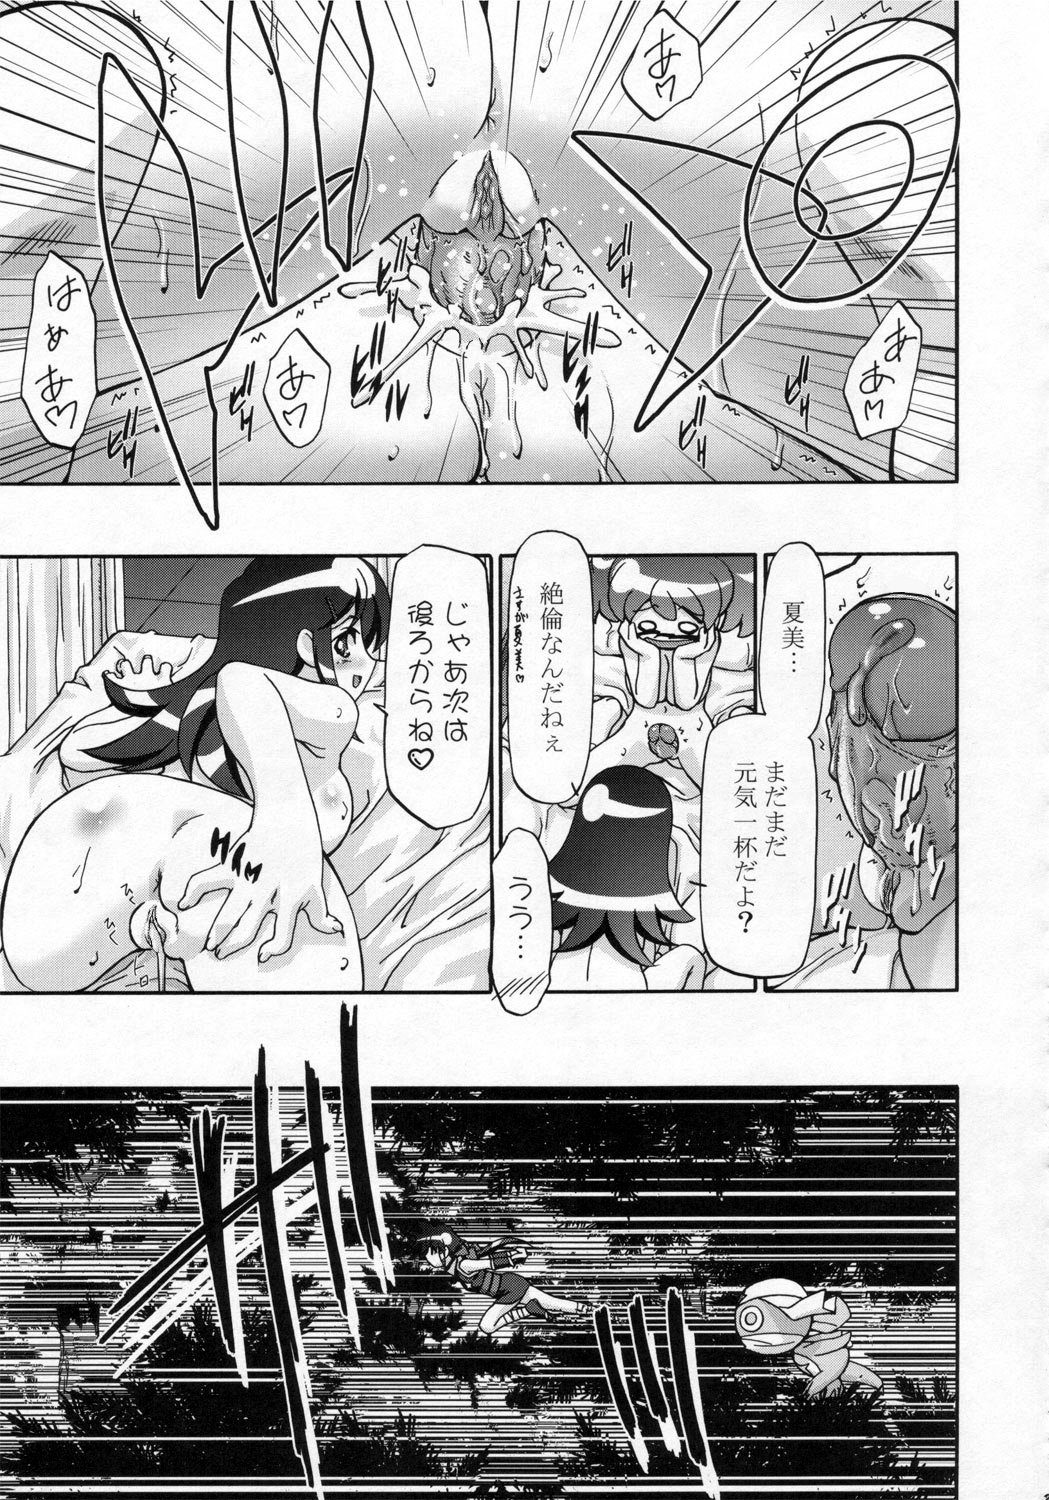 (SC31) [Gambler Club (Kousaka Jun)] Natsu Yuki - Summer Snow (Keroro Gunsou) page 22 full